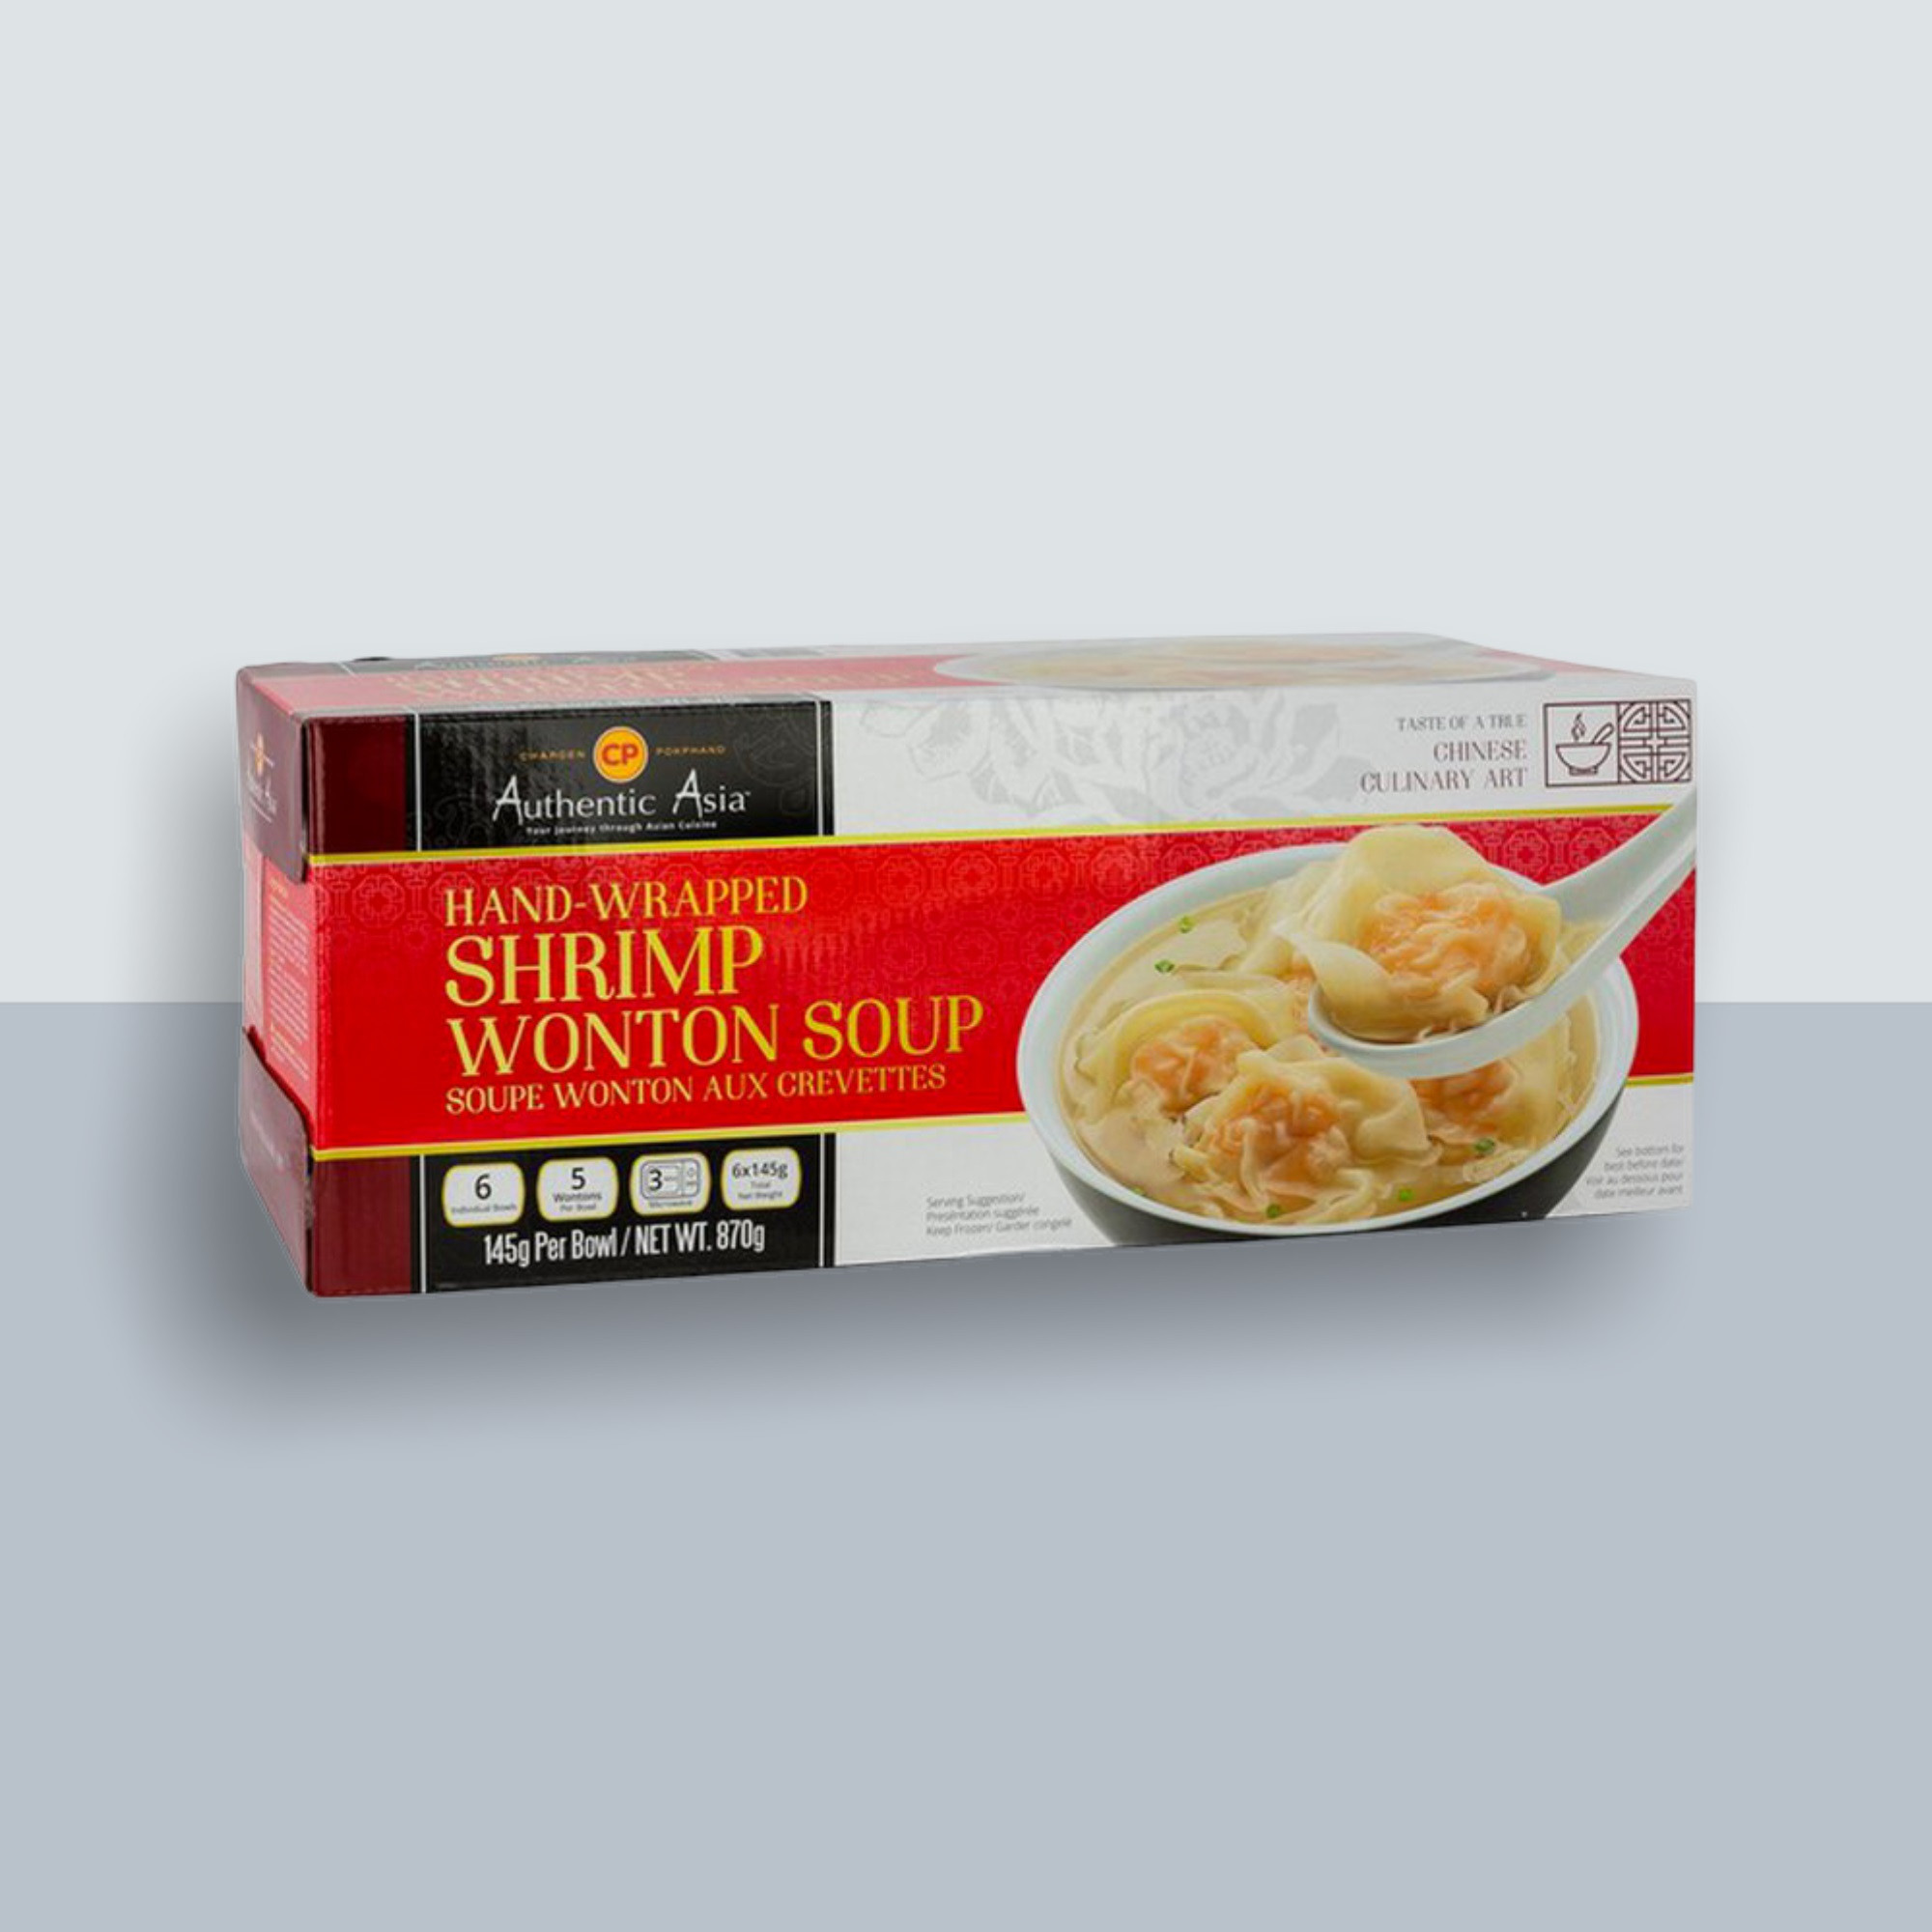 Authentic asia frozen hand-wrapped shrimp wonton soup